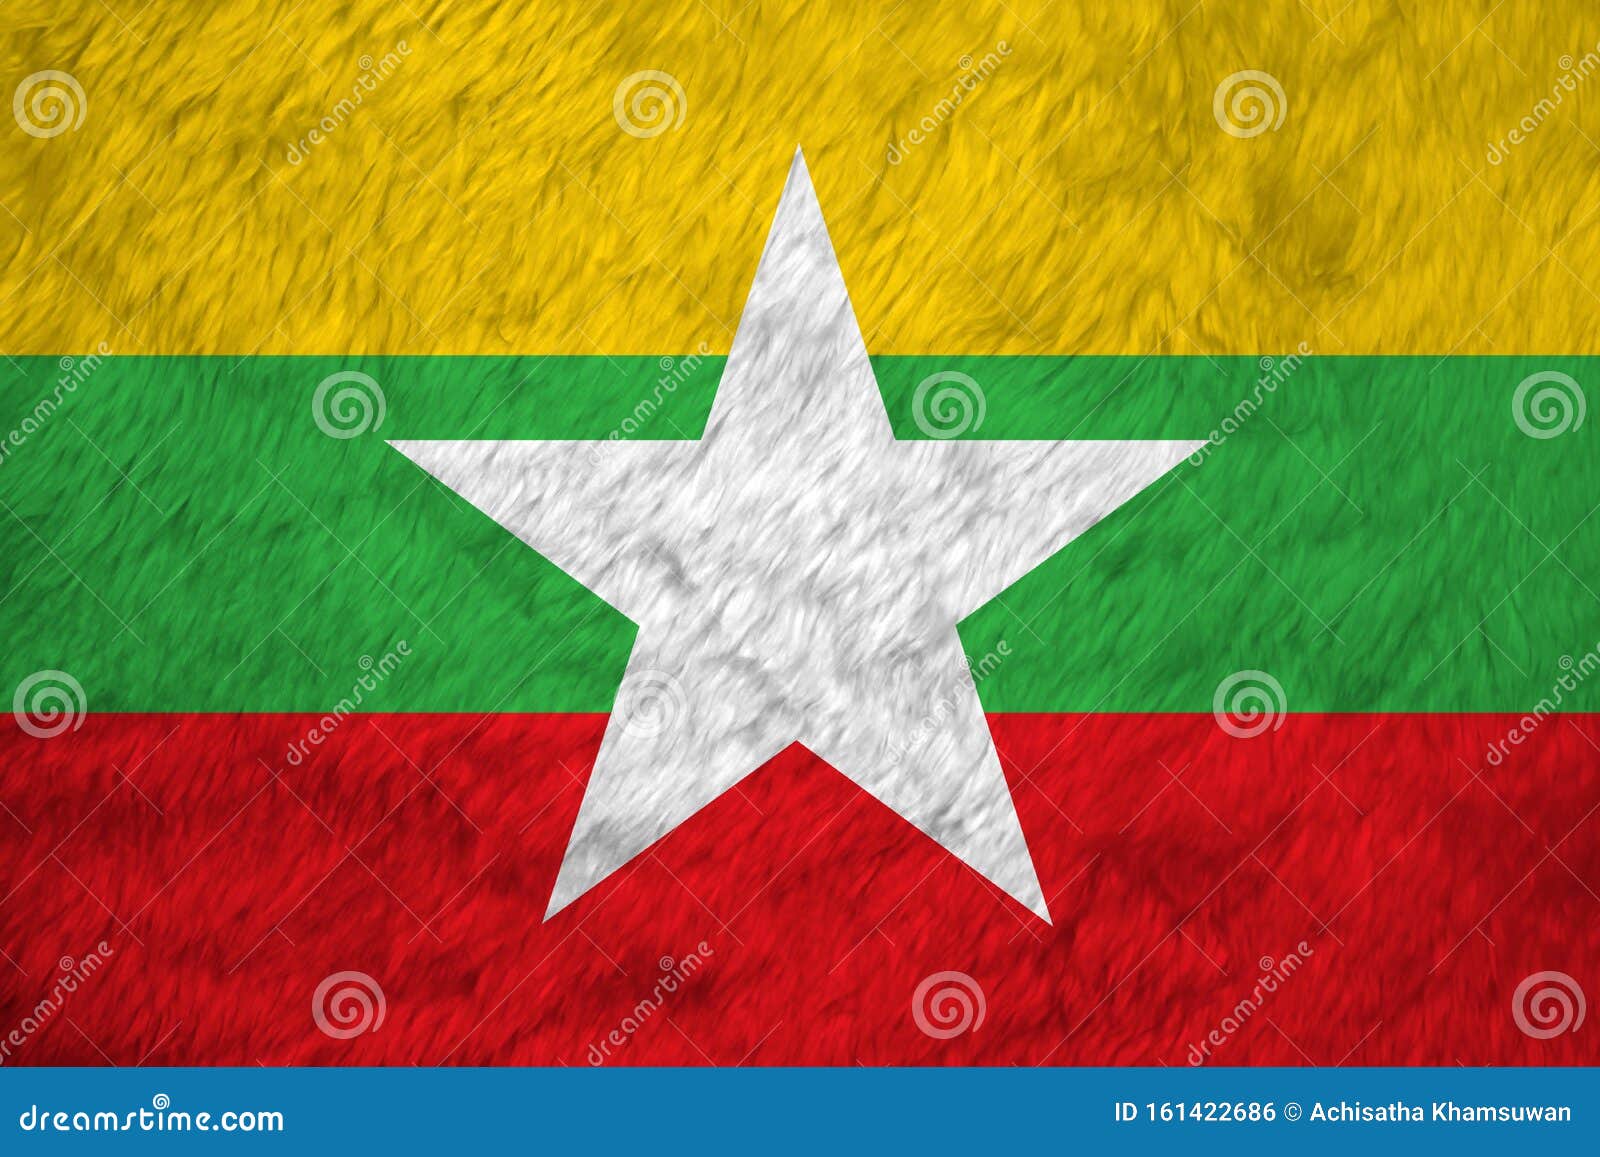 Fahne Des Musters Des Handtuchmusters In Myanmar Rot Grune Und Gelbe Farbe Und Weisser Stern Stock Abbildung Illustration Von Beamter Material 161422686